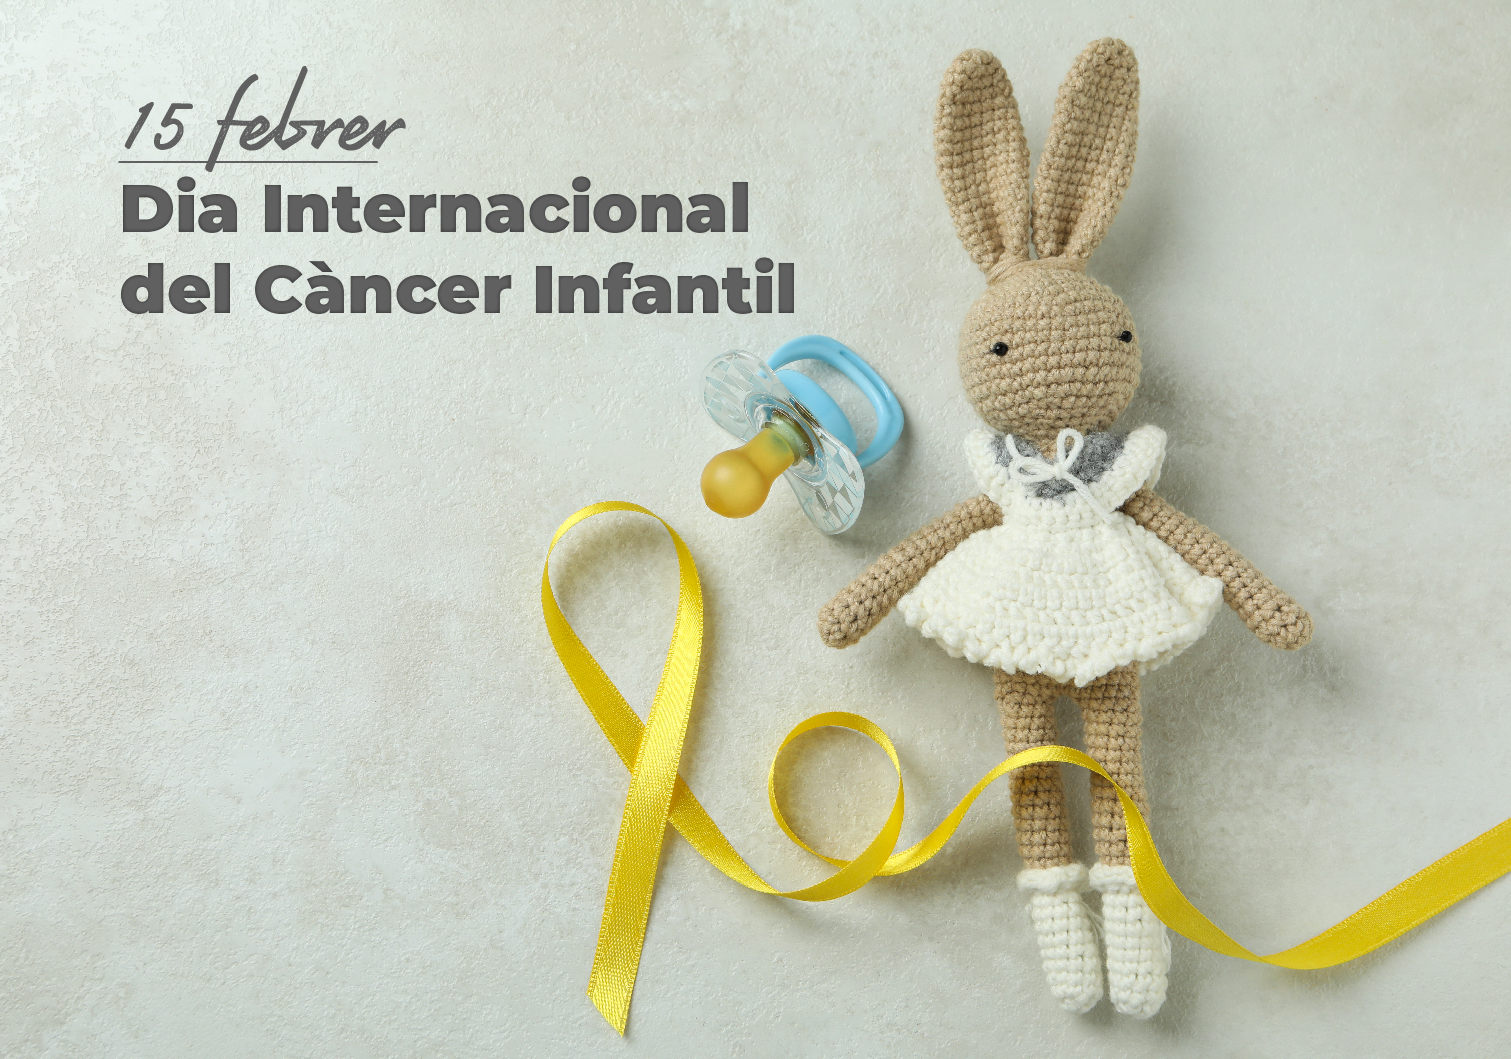 15 de febrer. Dia internacional del càncer infantil amb dades esperançadores.